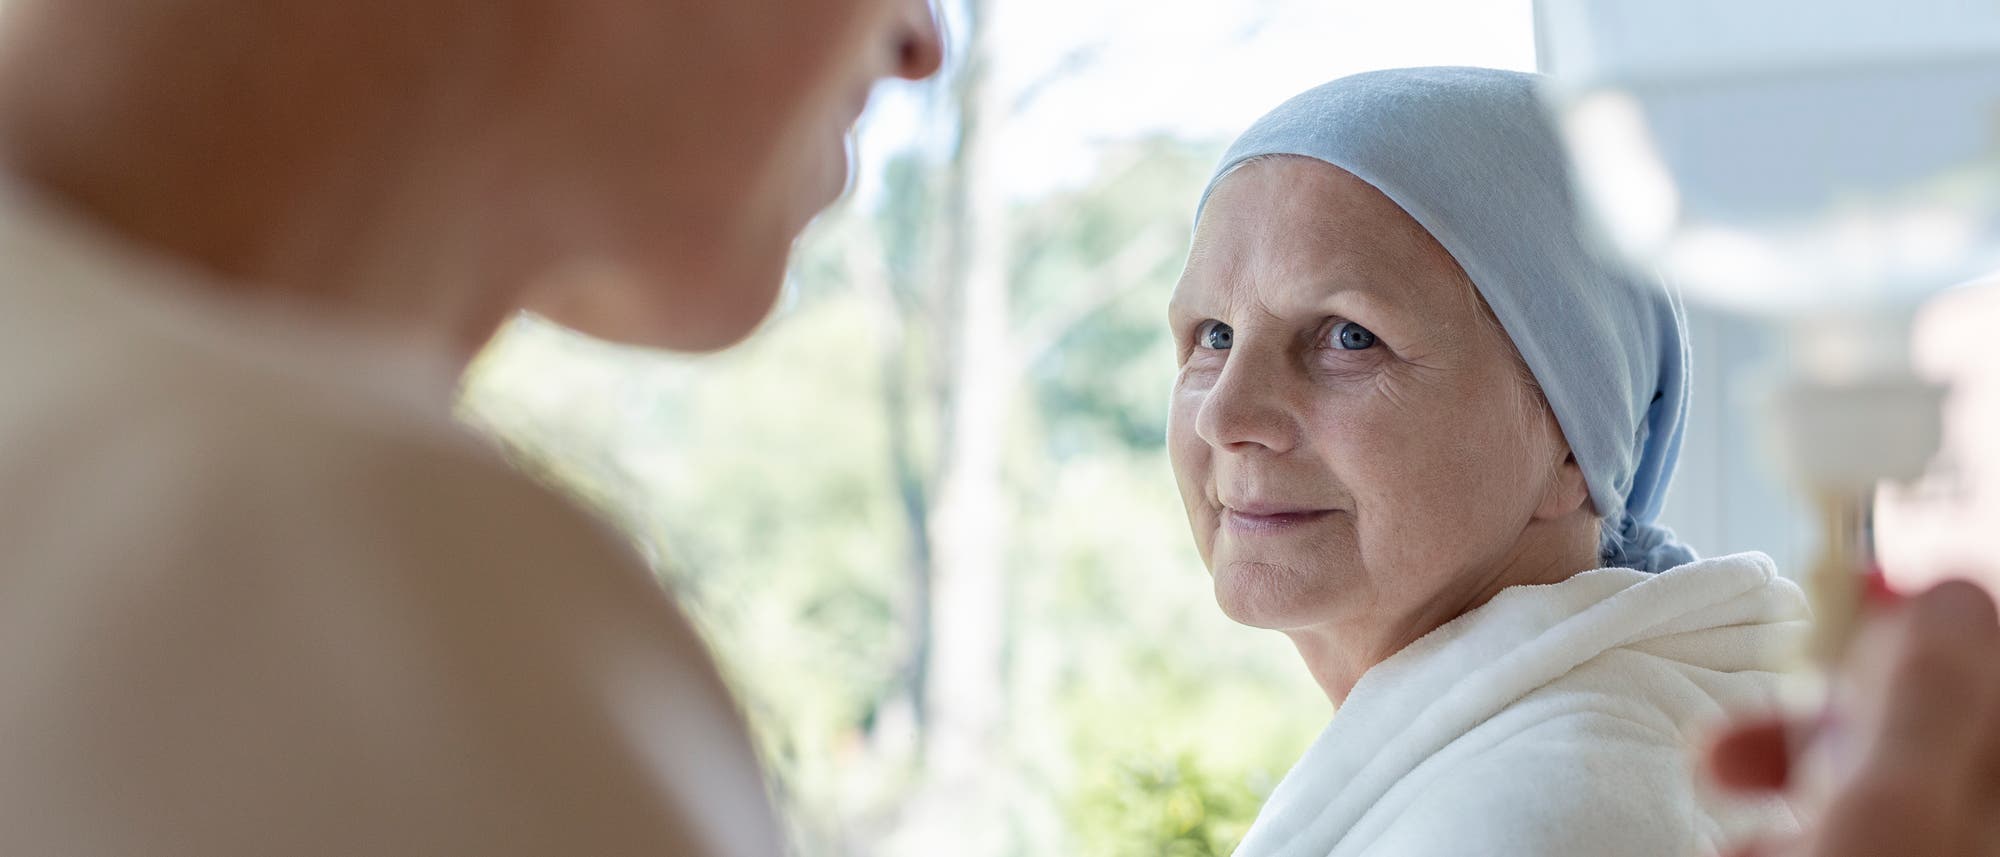 Eine offenbar an Krebs erkrankte Frau trägt ein Kopftuch und schaut hoffnungsvoll eine andere Frau an, die gerade einen Infusionsbeutel reguliert.